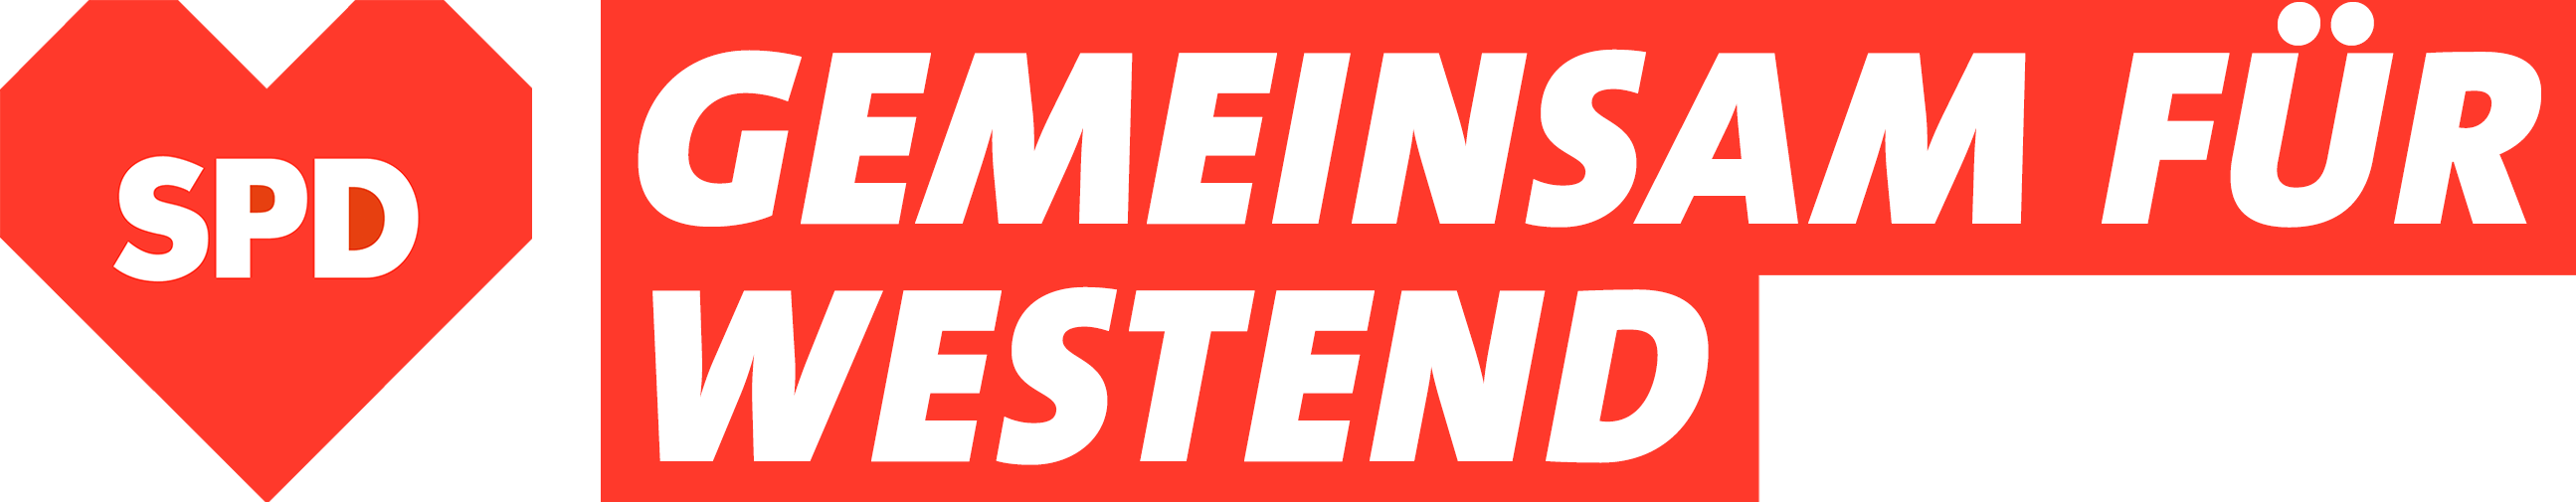 SPD Herz Logo und Claim Westend